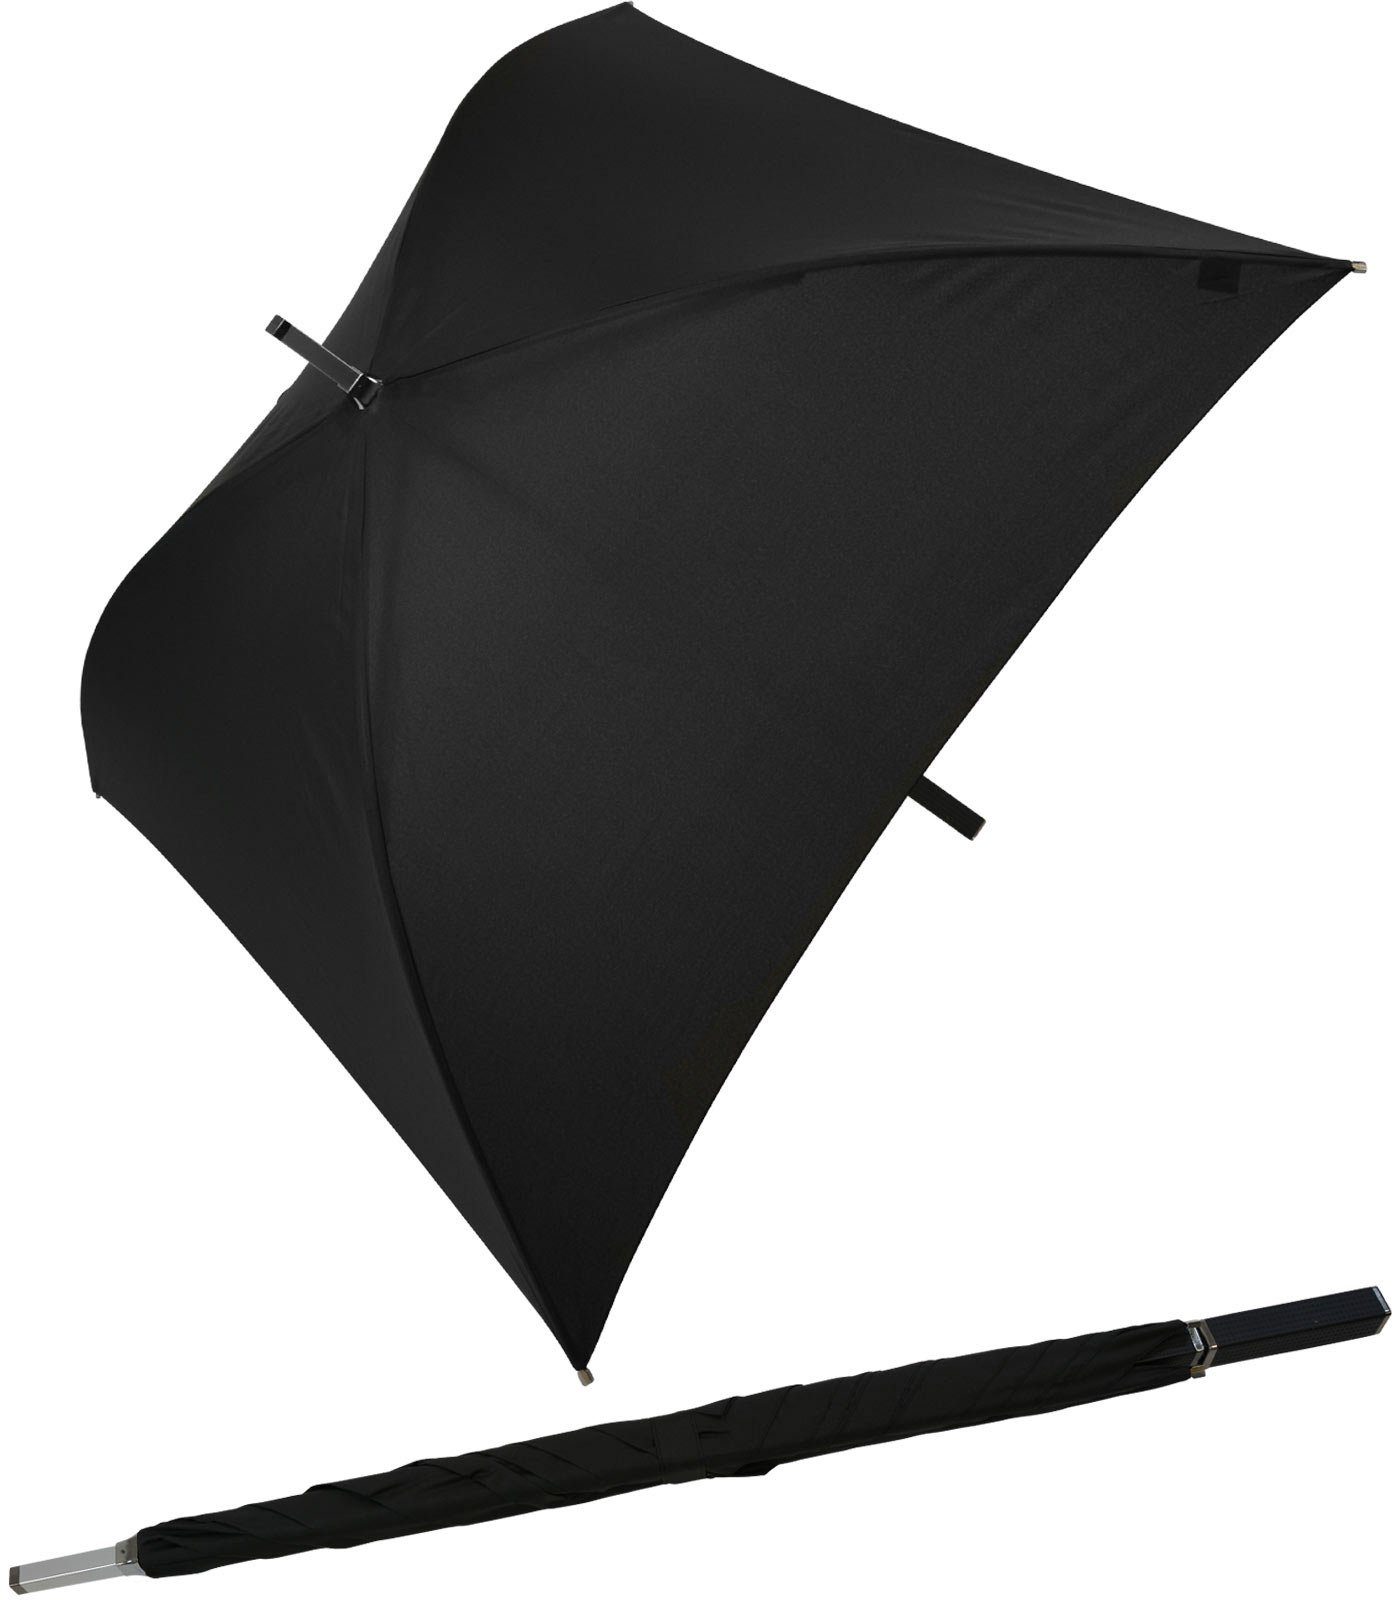 Impliva Langregenschirm All Square® voll quadratischer Regenschirm, der ganz besondere Regenschirm schwarz